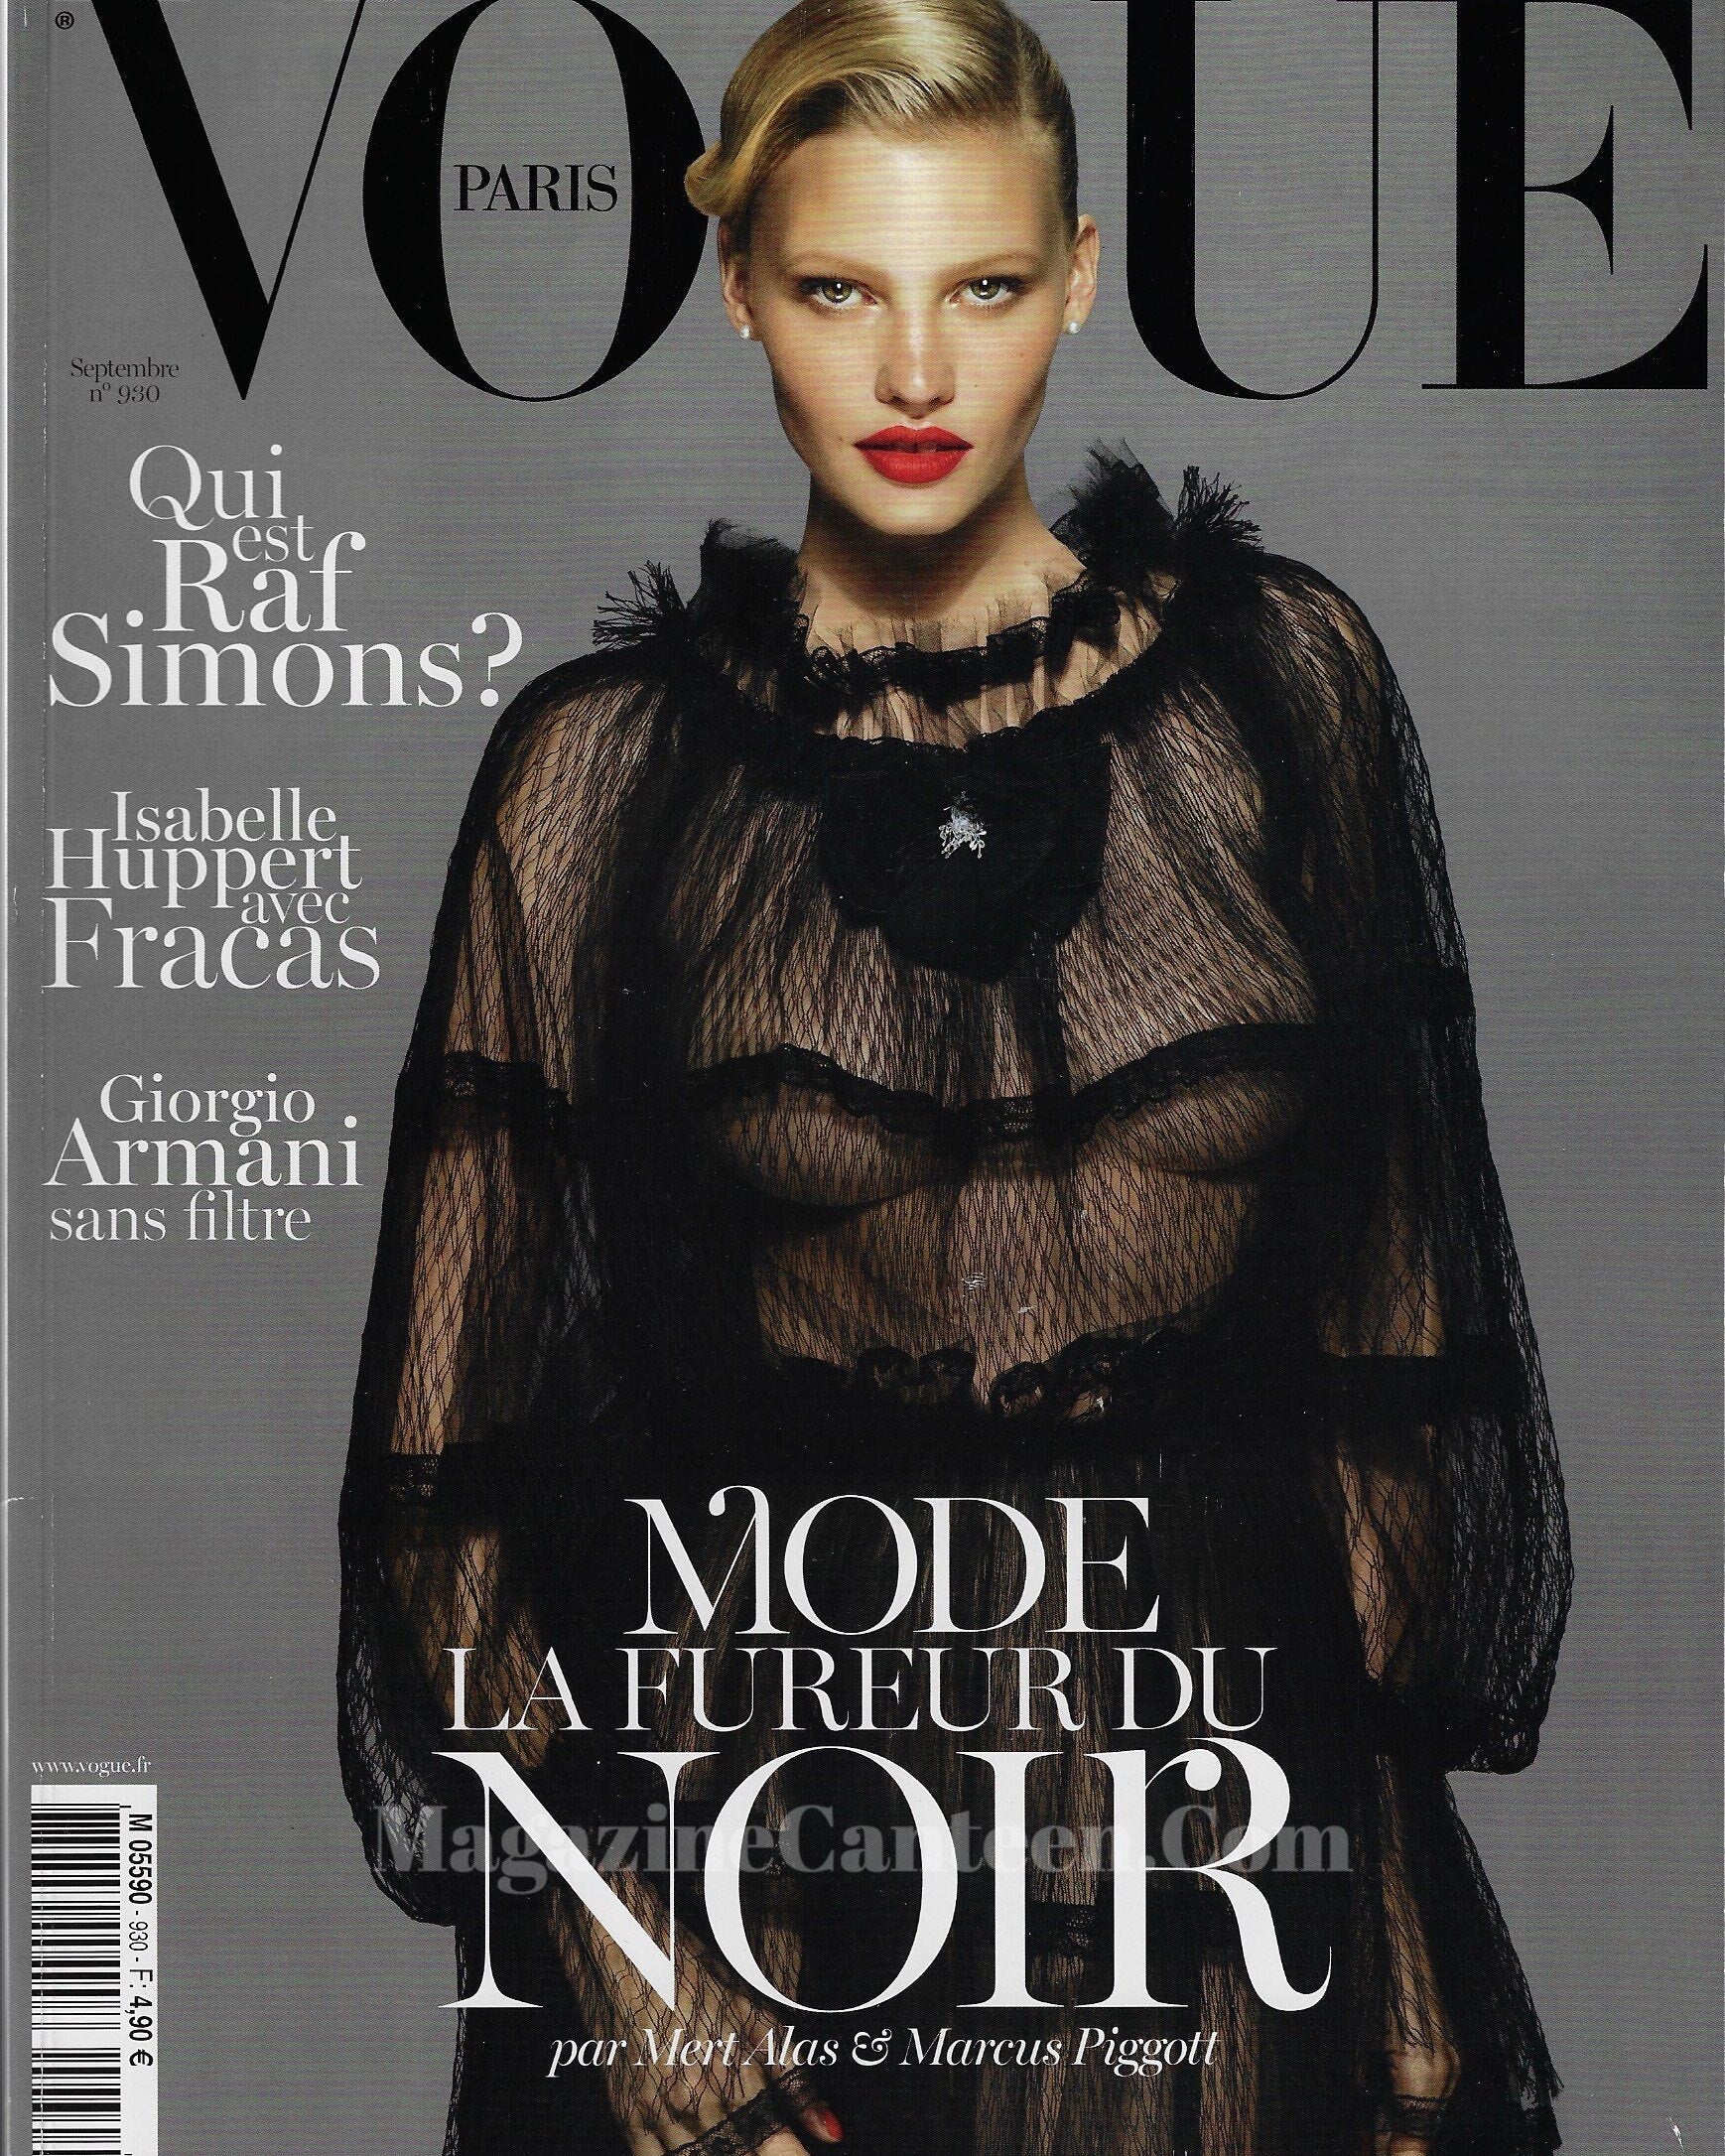 Vogue Paris Magazine 2012 - Lara Stone